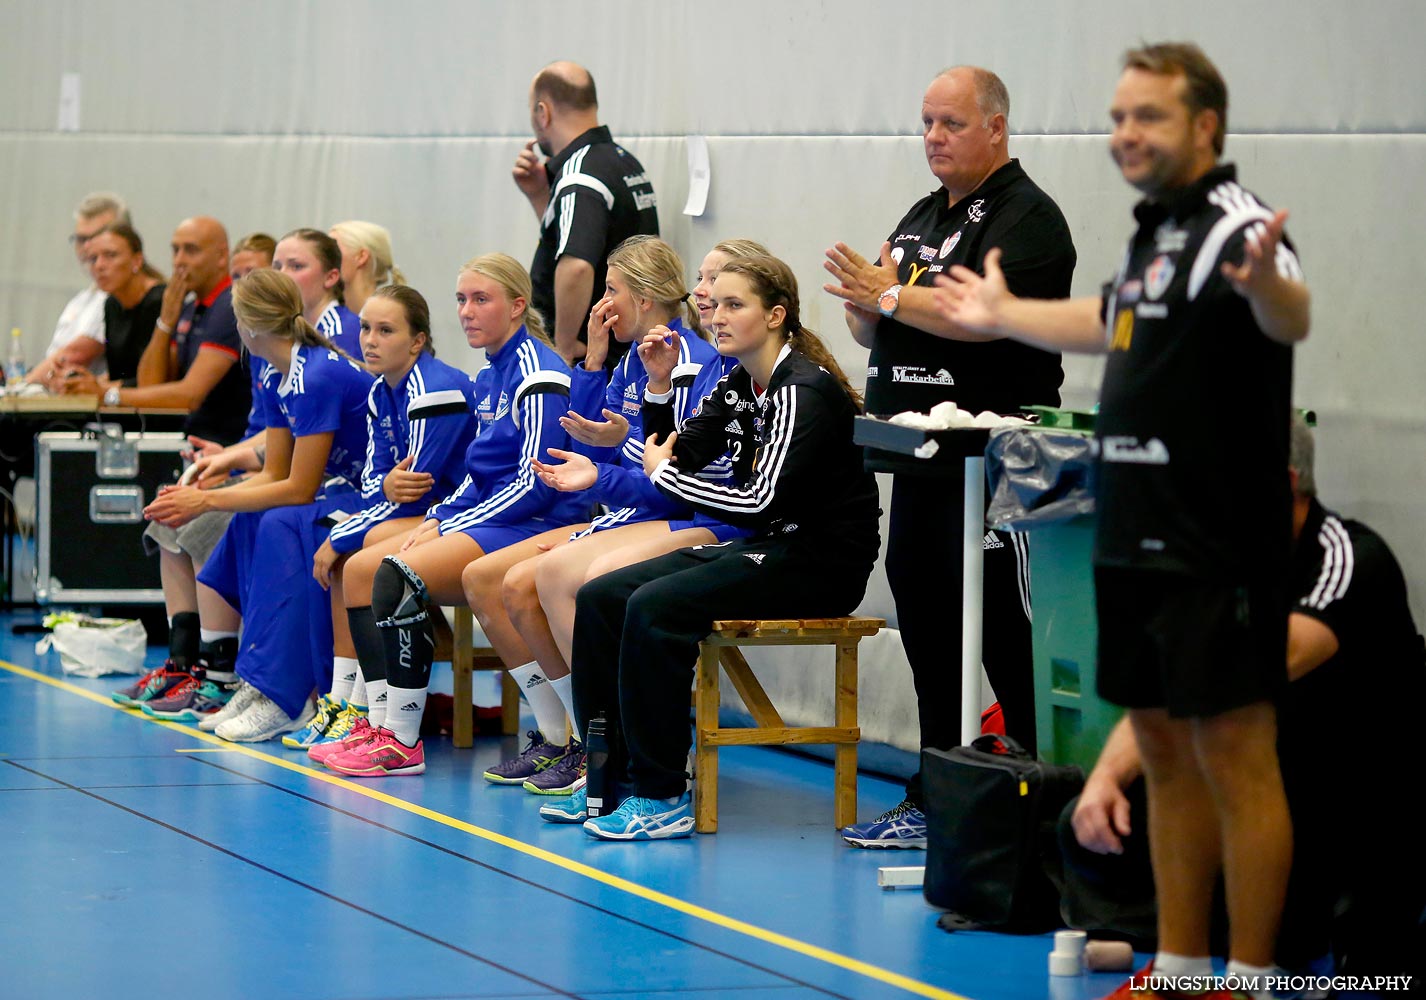 Annliz Cup Elit HF Somby Skövde Röd-Torslanda/Bjurslätt 18-34,dam,Arena Skövde,Skövde,Sverige,Annliz Cup 2015,Handboll,2015,120607